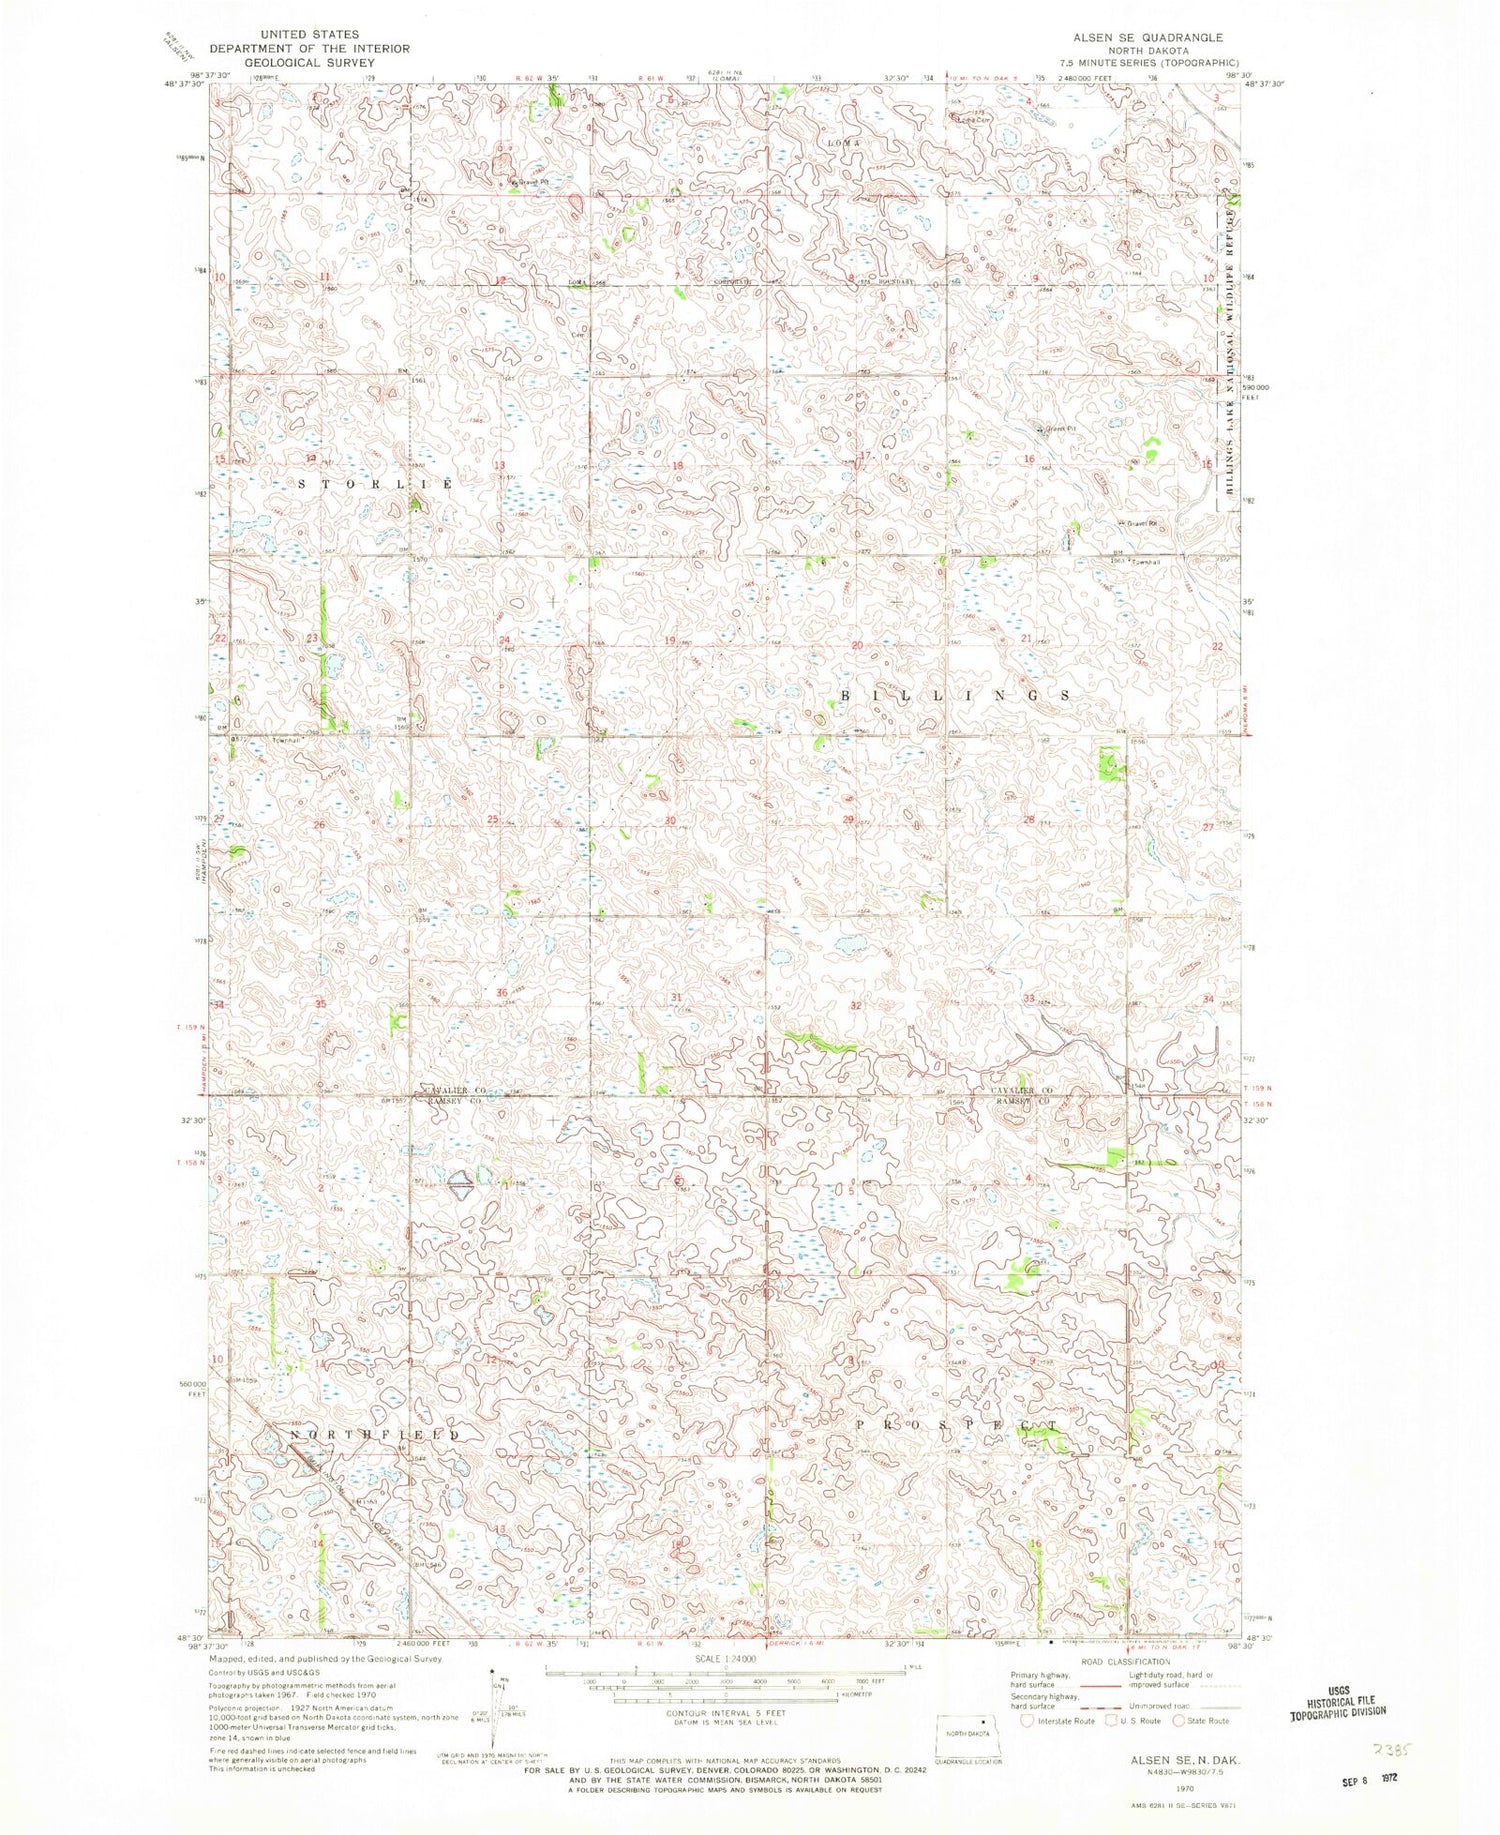 Classic USGS Alsen SE North Dakota 7.5'x7.5' Topo Map Image